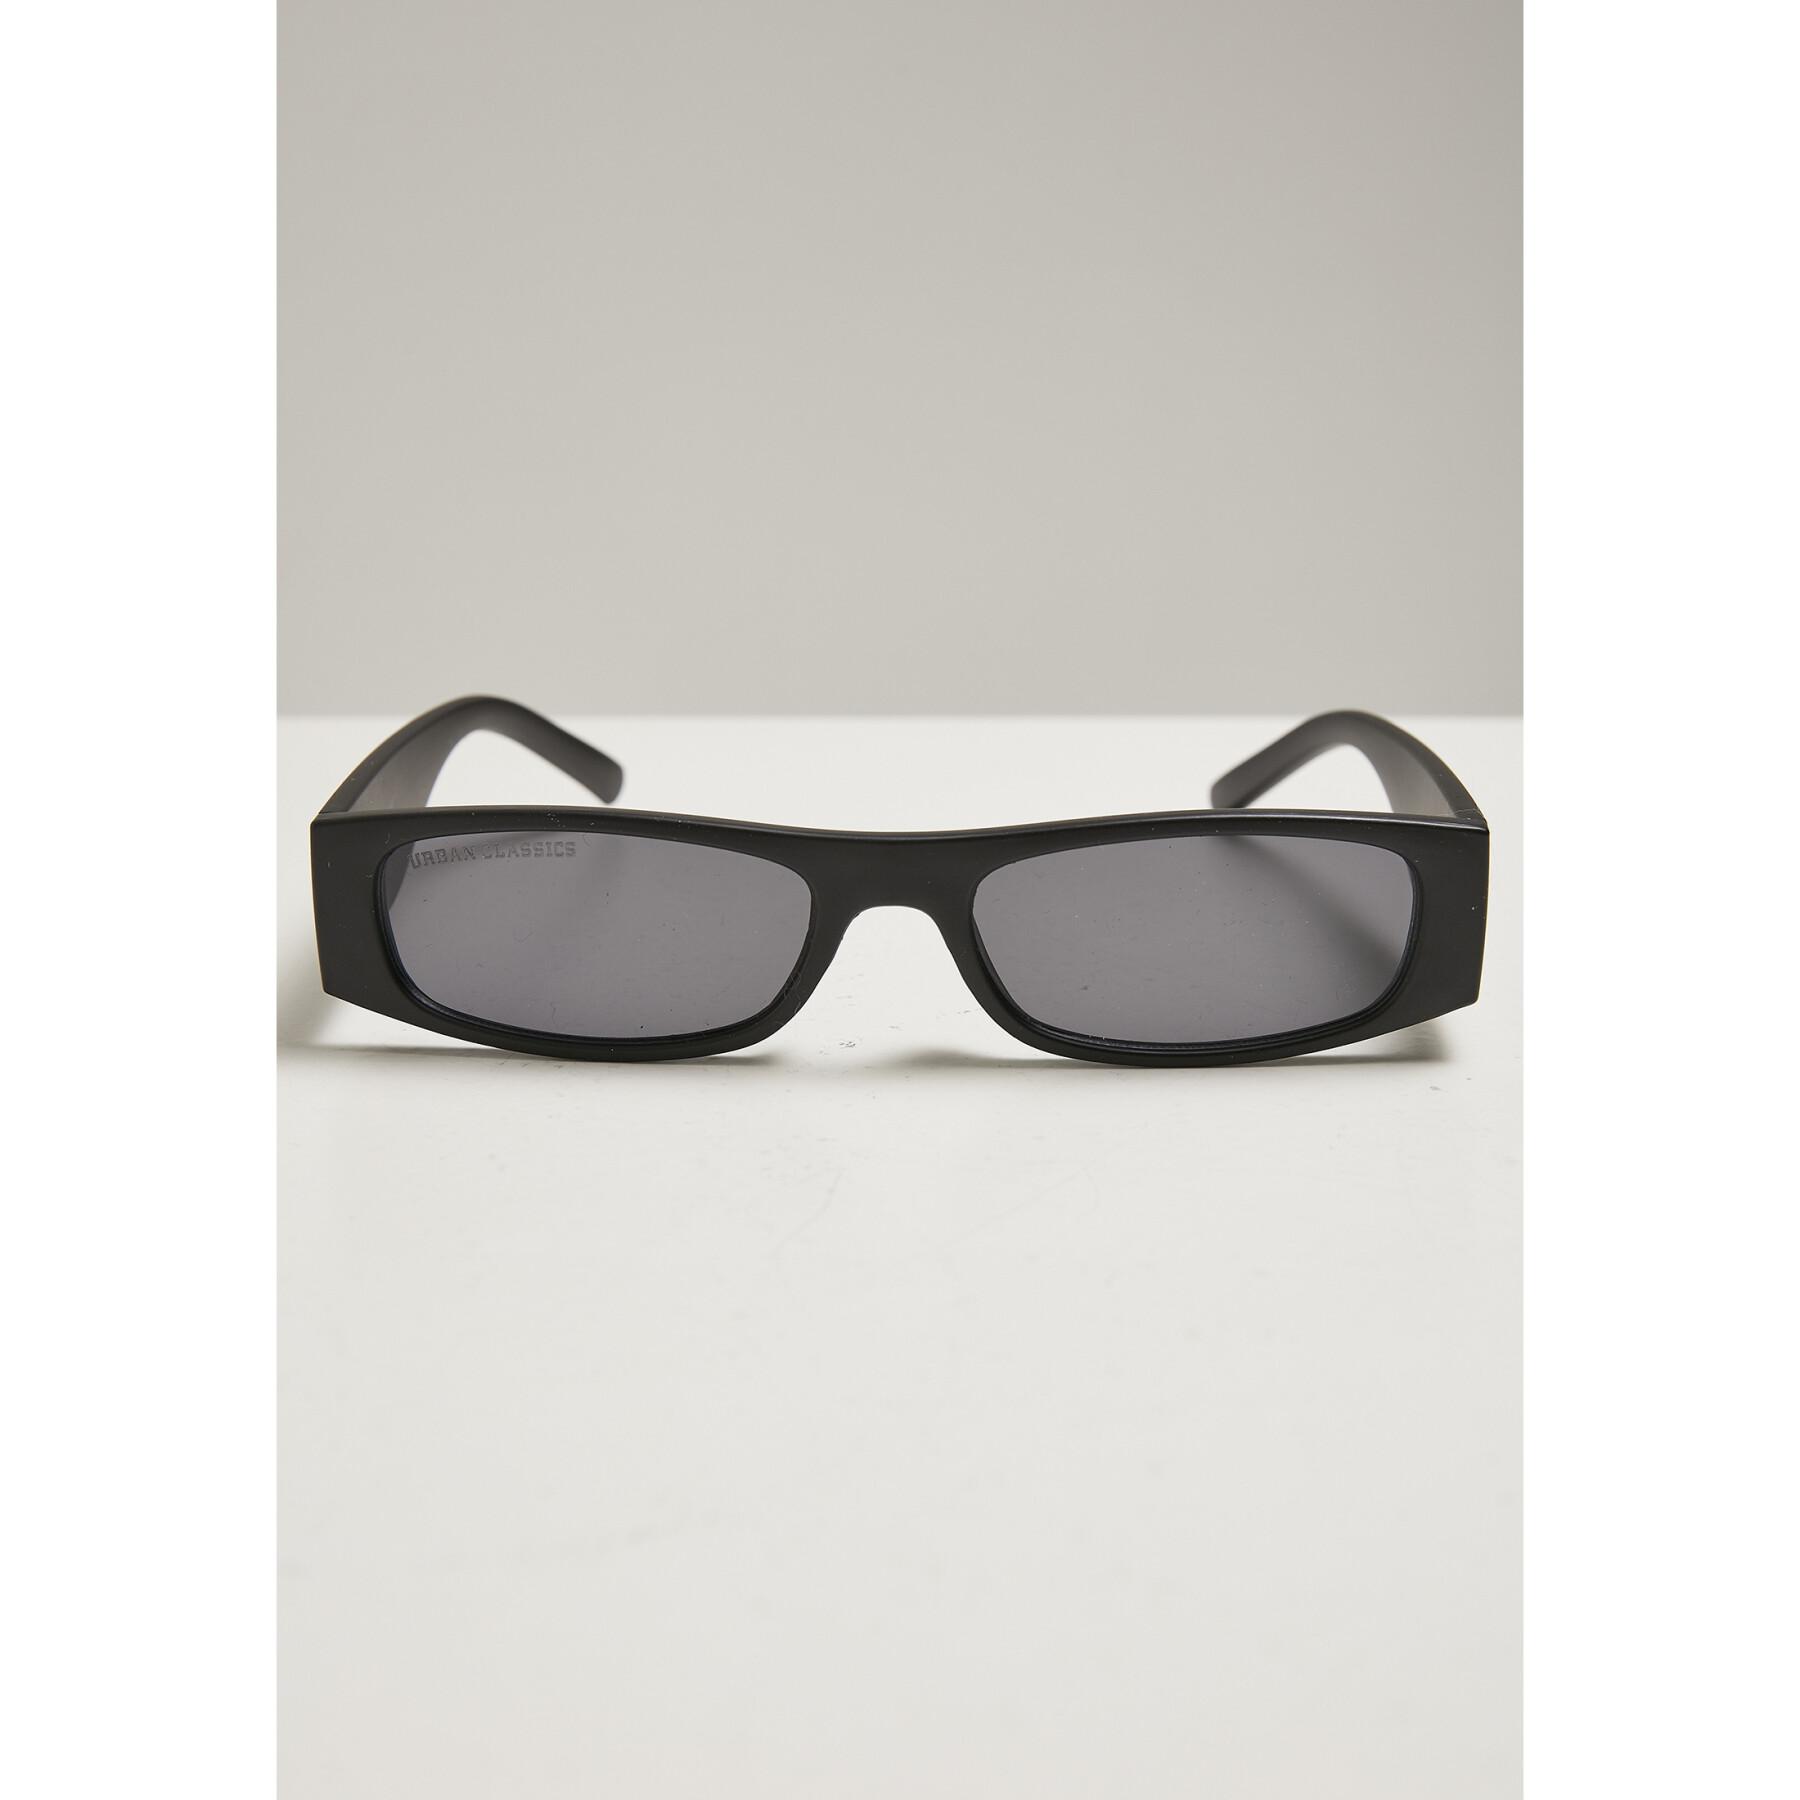 Gafas de sol Urban Classics Sunglasses Teressa